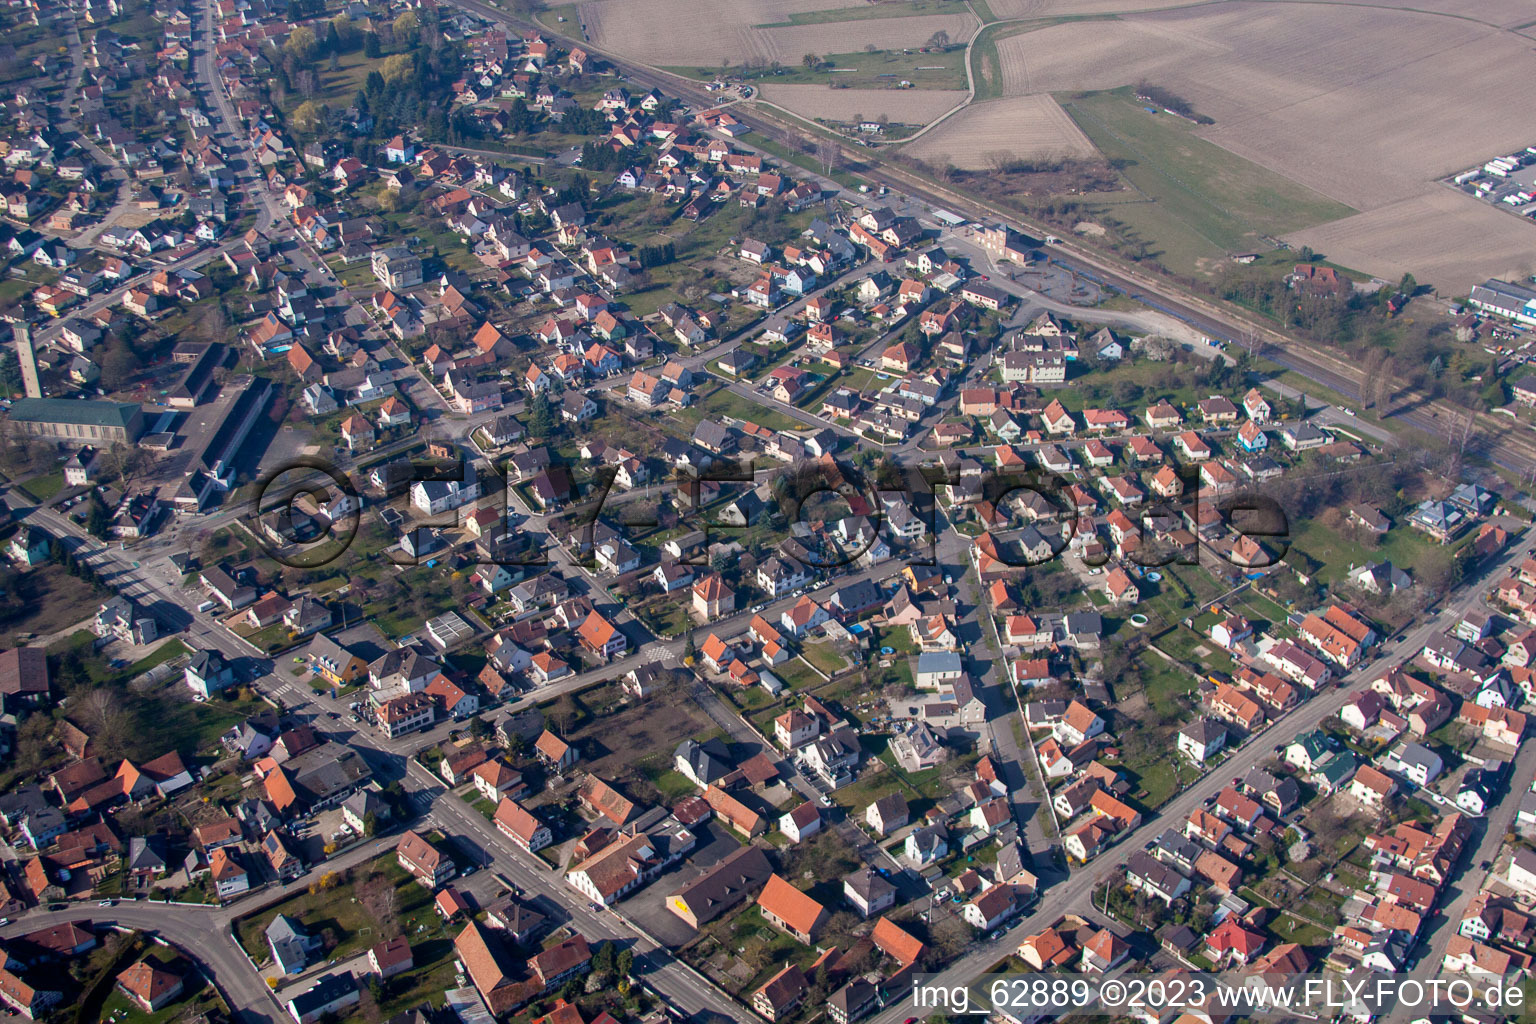 Gambsheim im Bundesland Bas-Rhin, Frankreich aus der Luft betrachtet